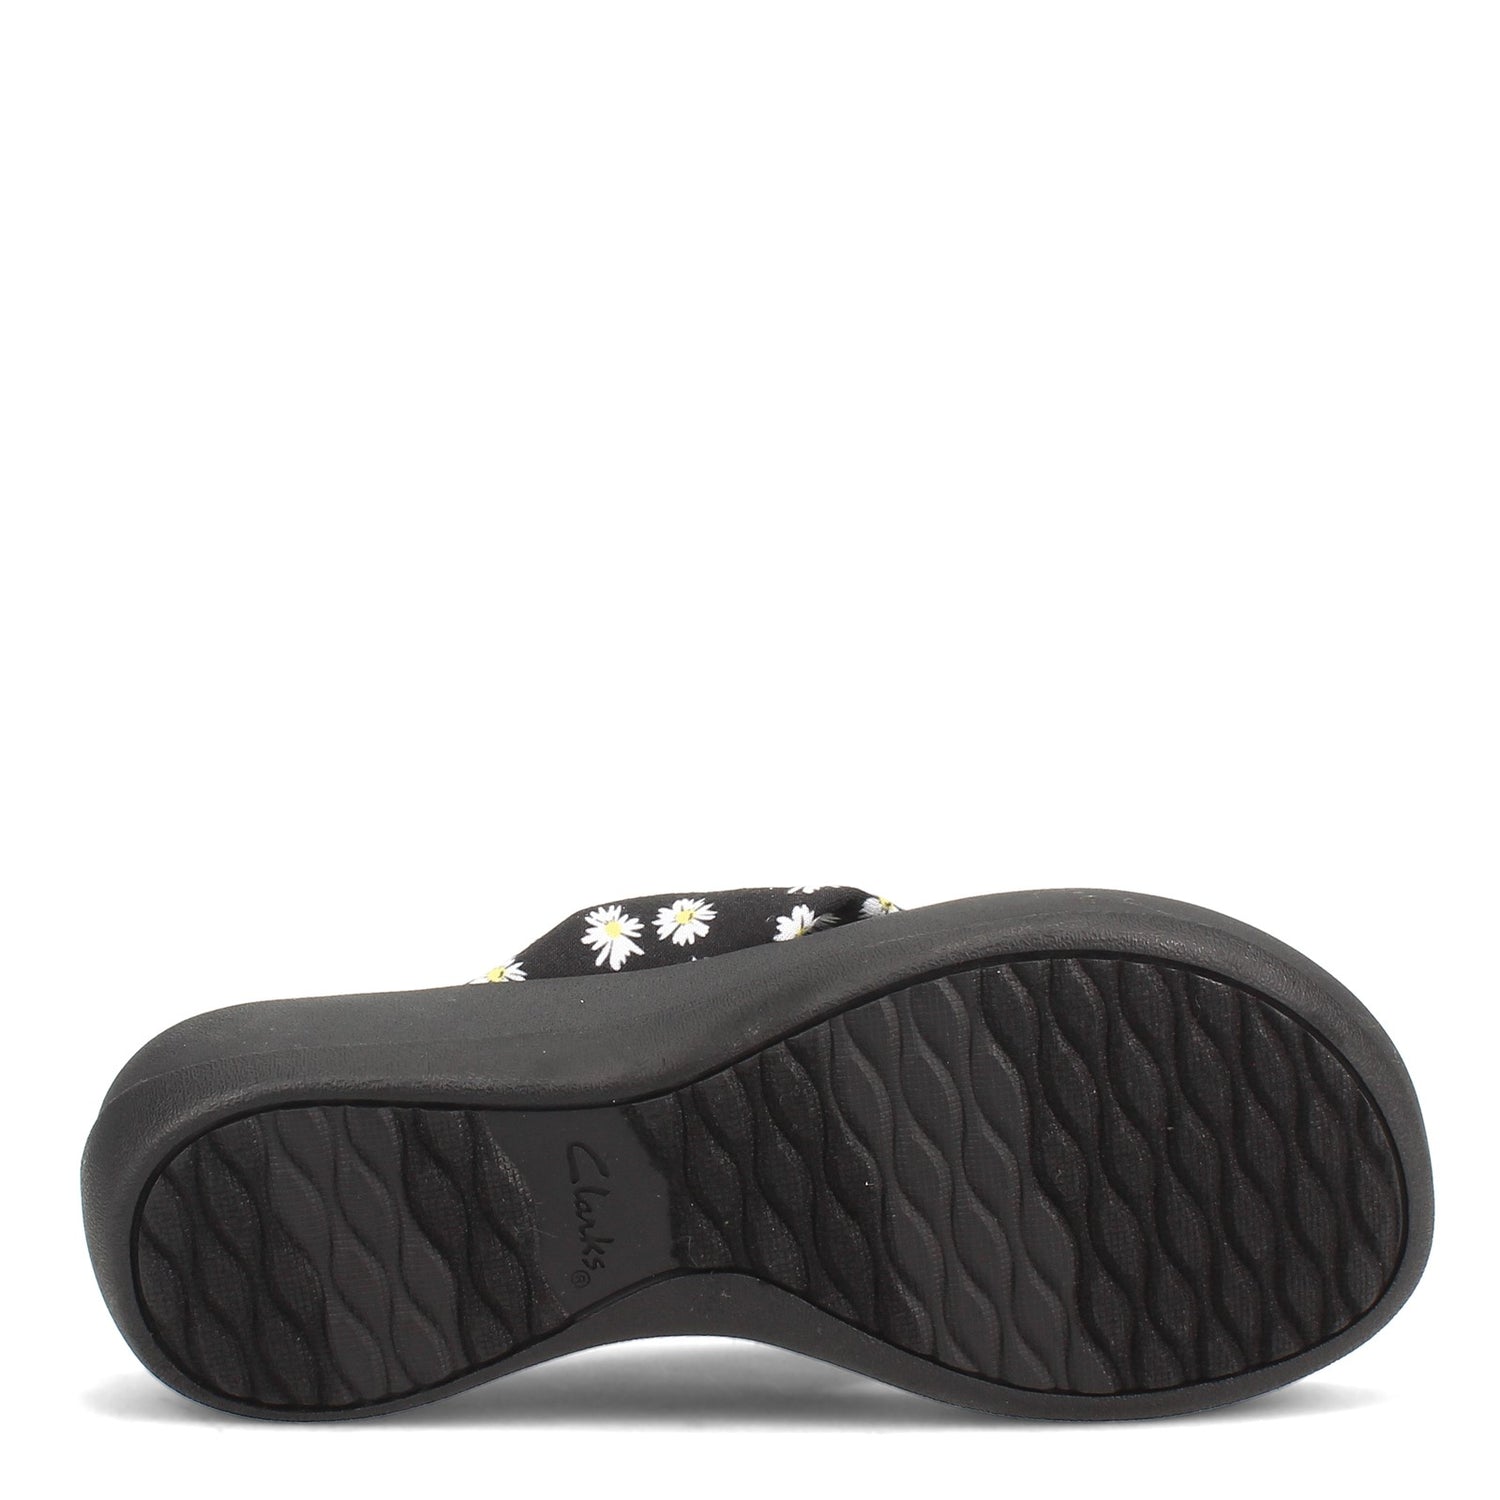 Peltz Shoes  Women's Clarks Arla Glison Sandal BLACK FLORAL PRINT 26156957